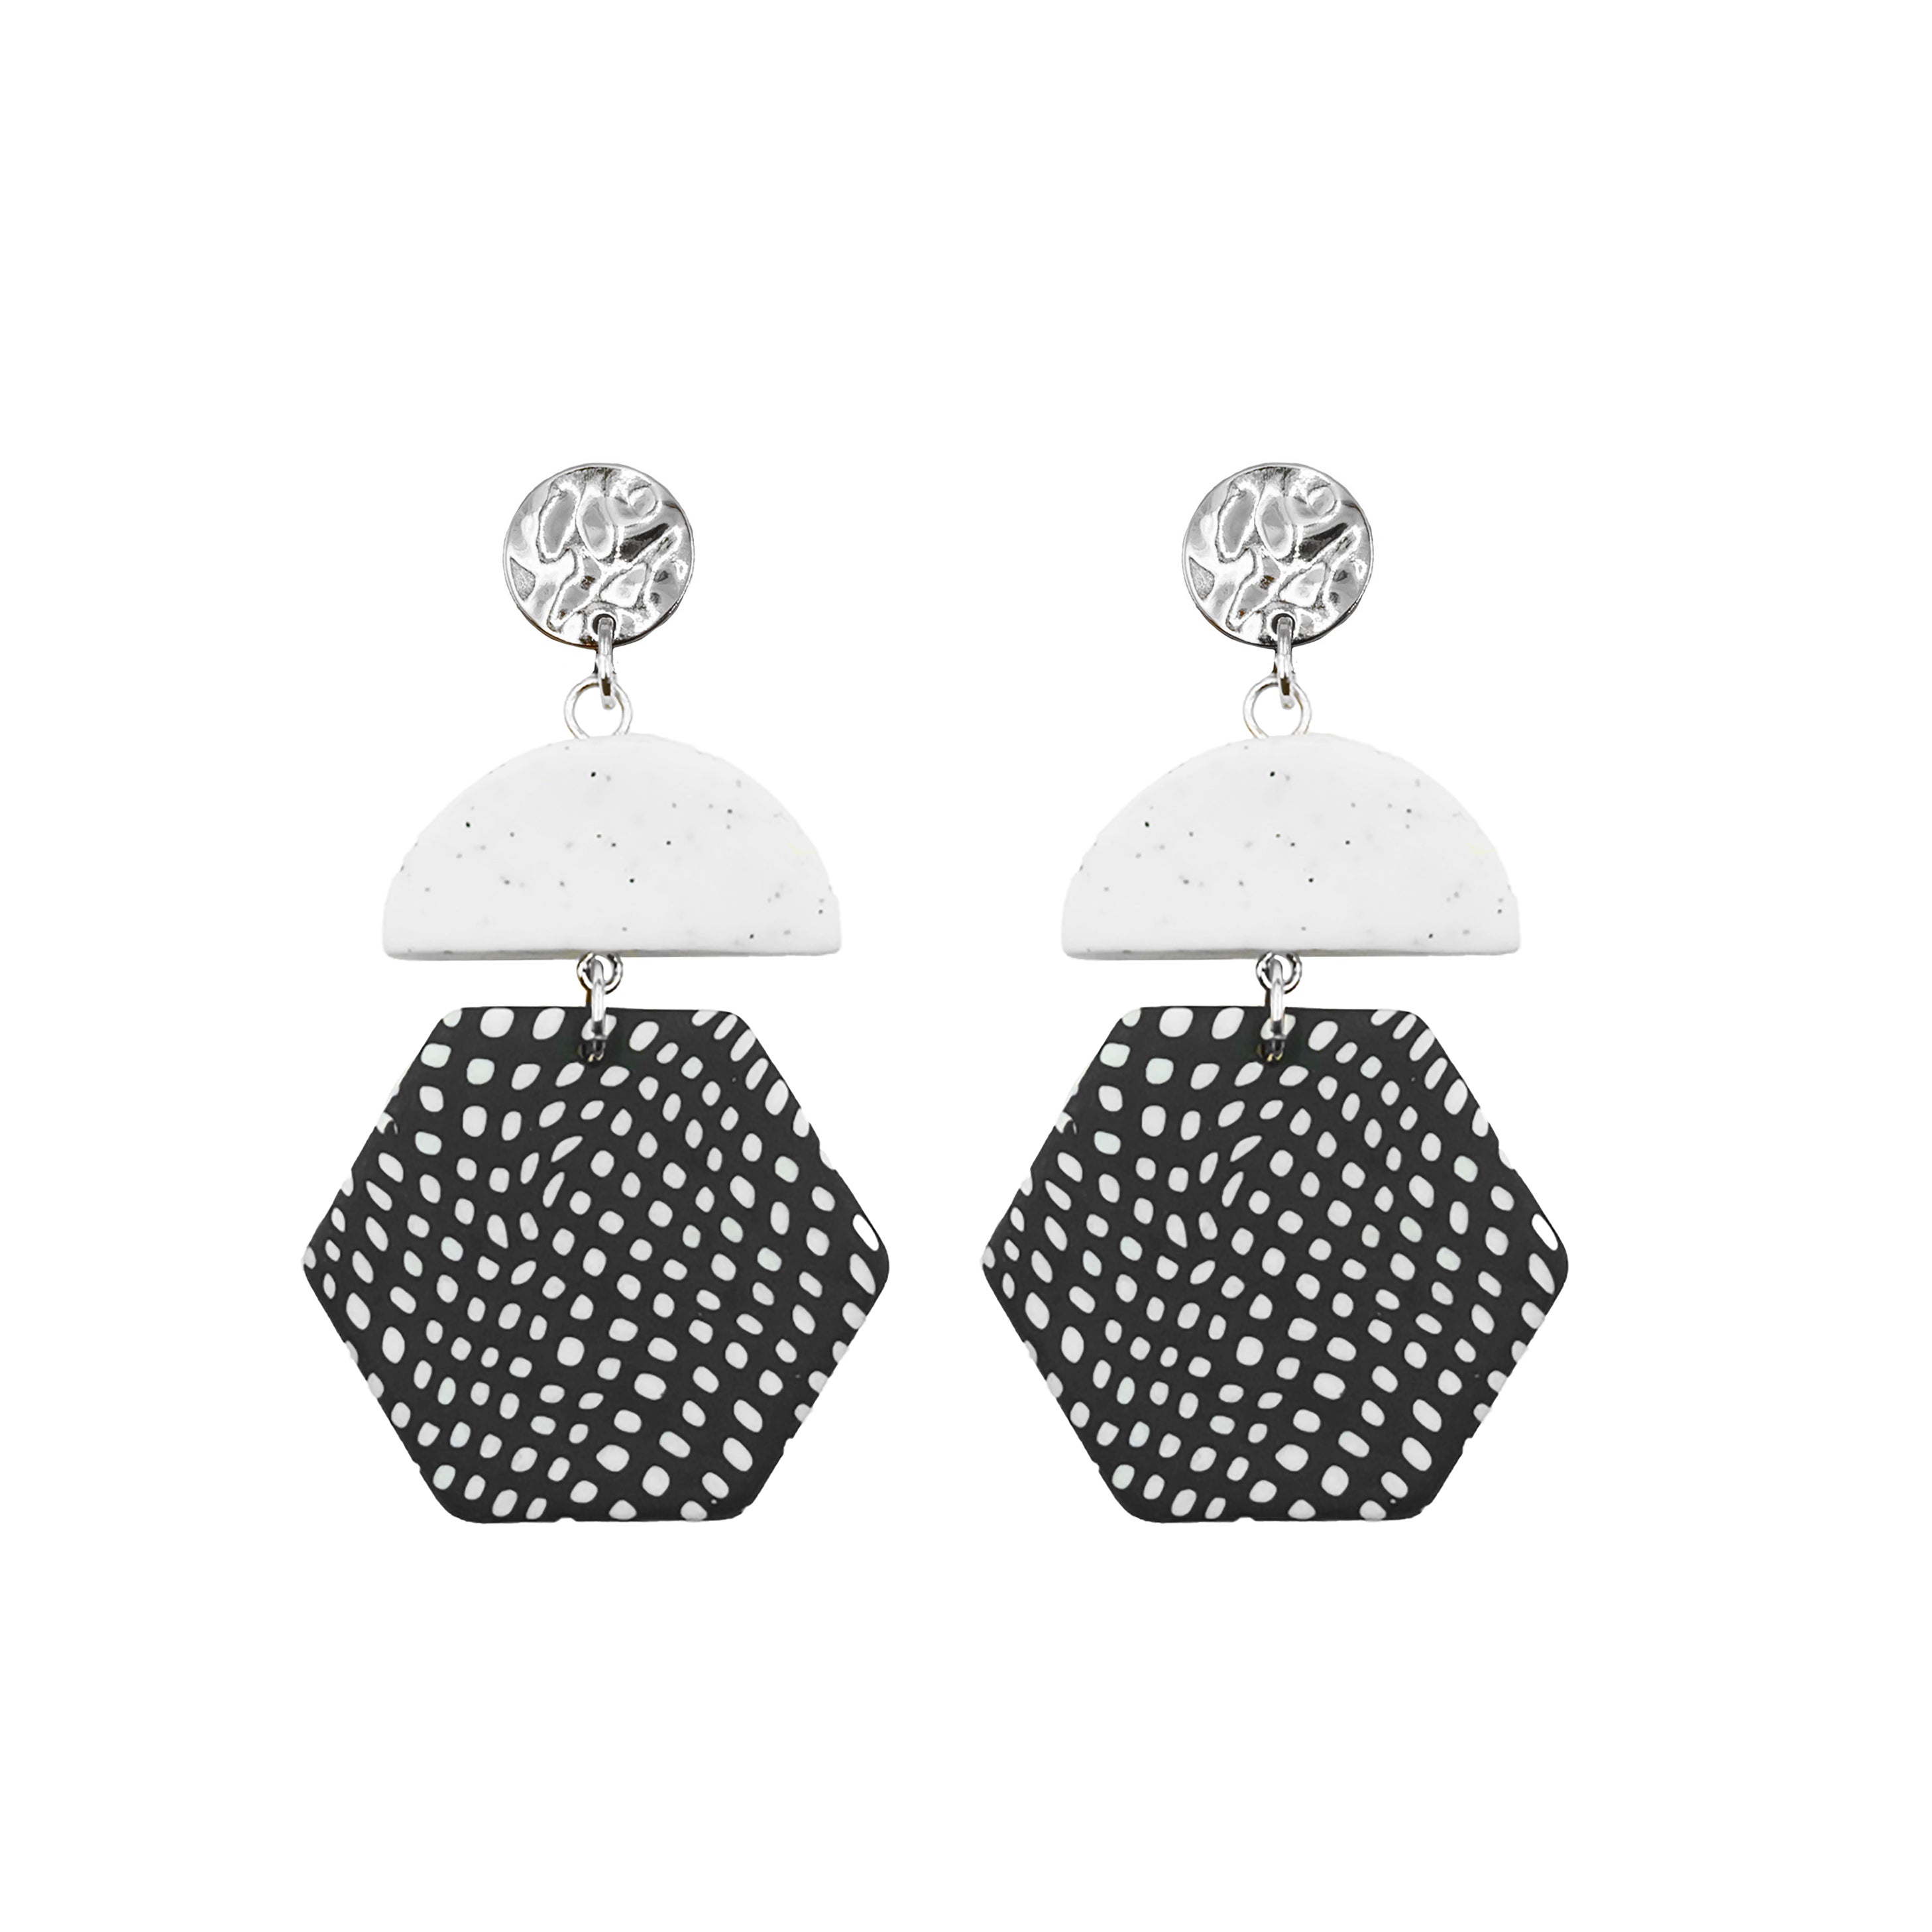 Collezione Bonita - Orecchini Dottie in argento, gioielli di design per uomini e donne